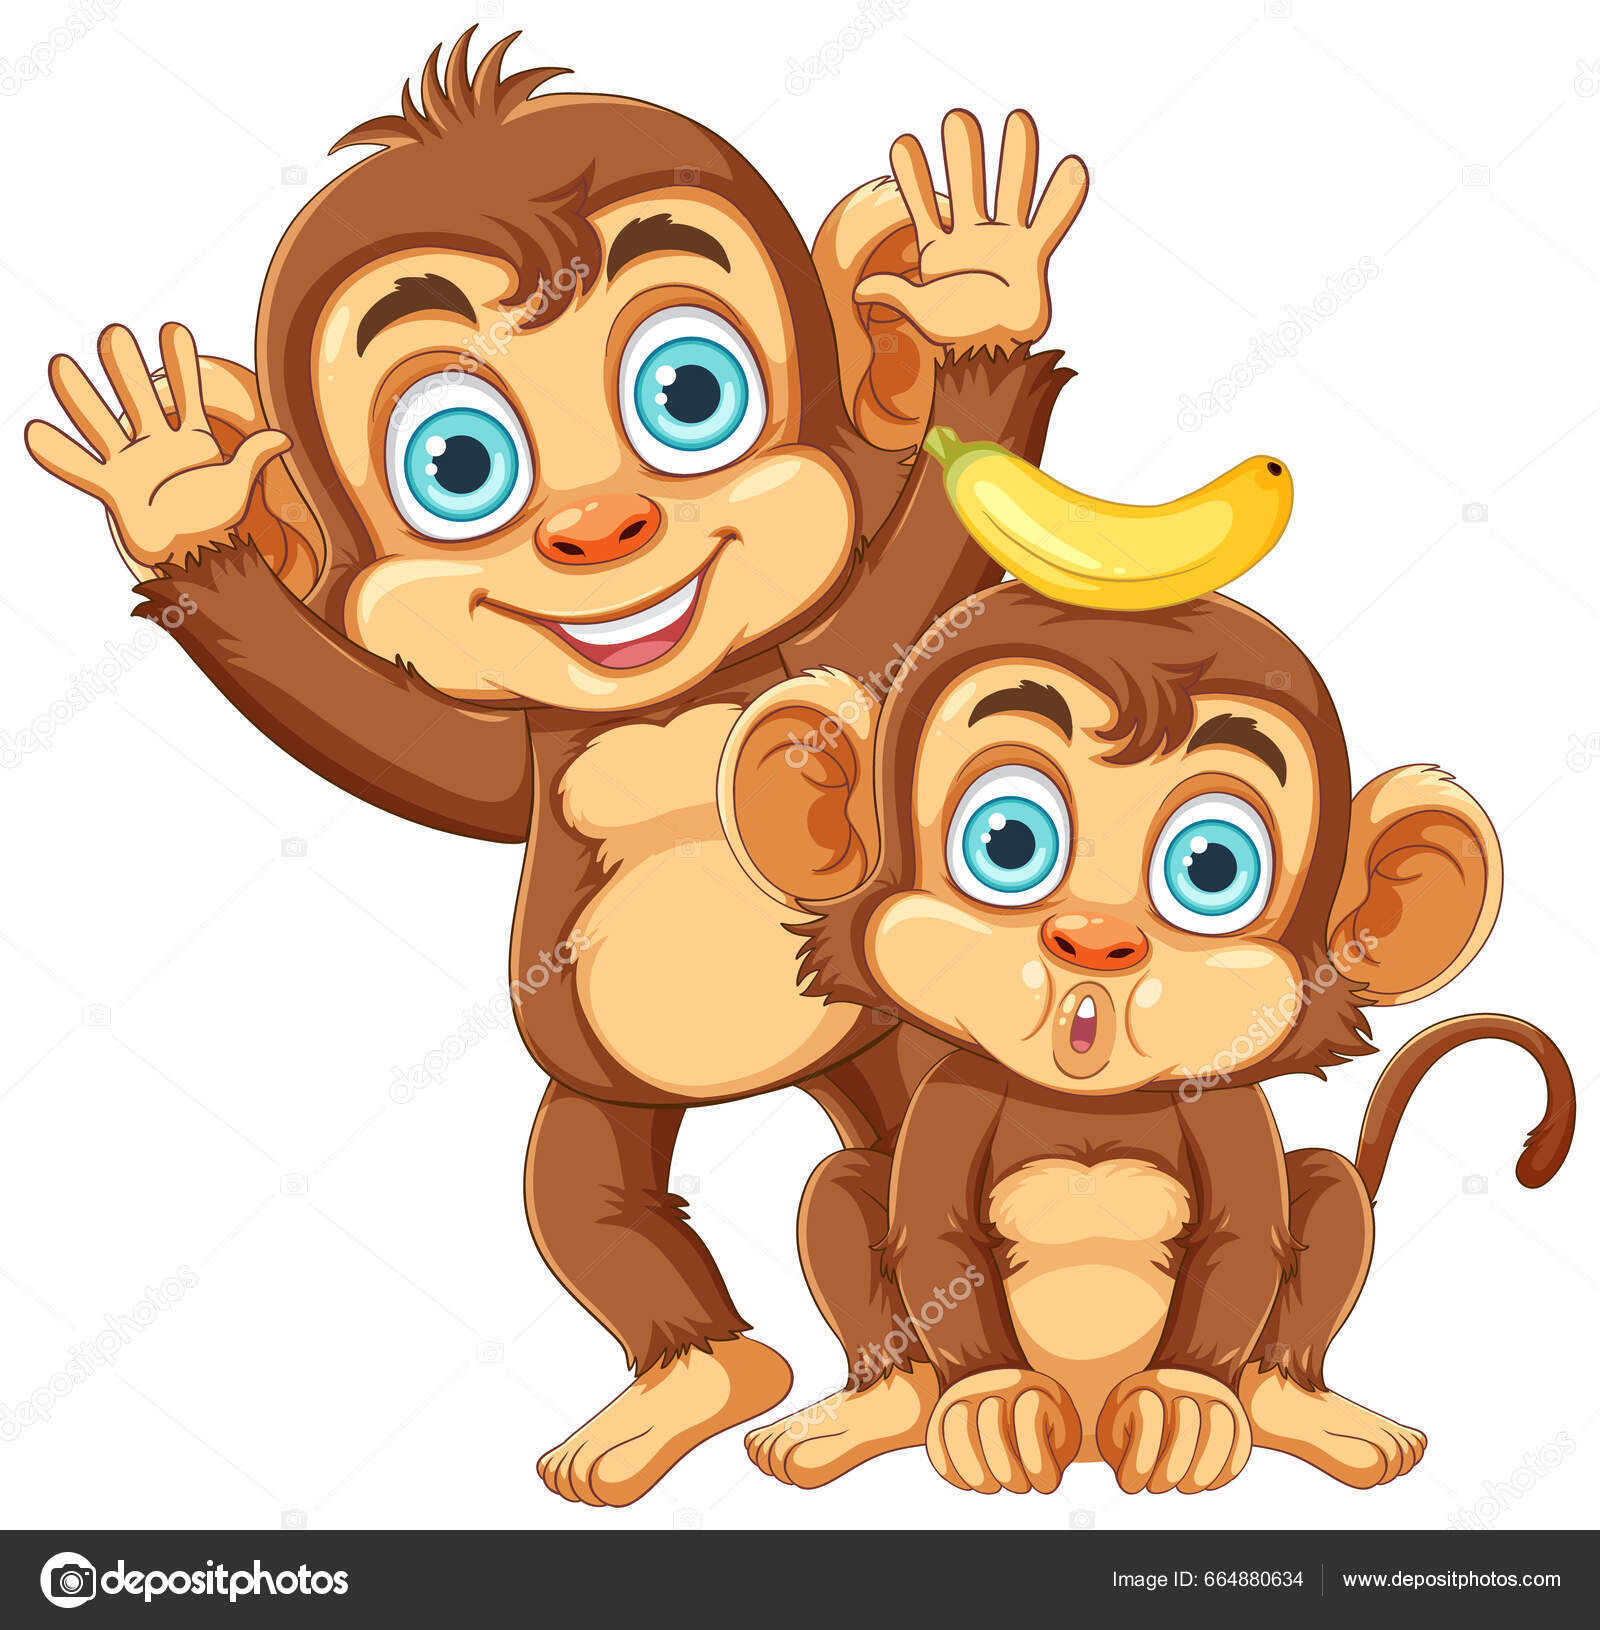 Fotos engraçadas de macacos